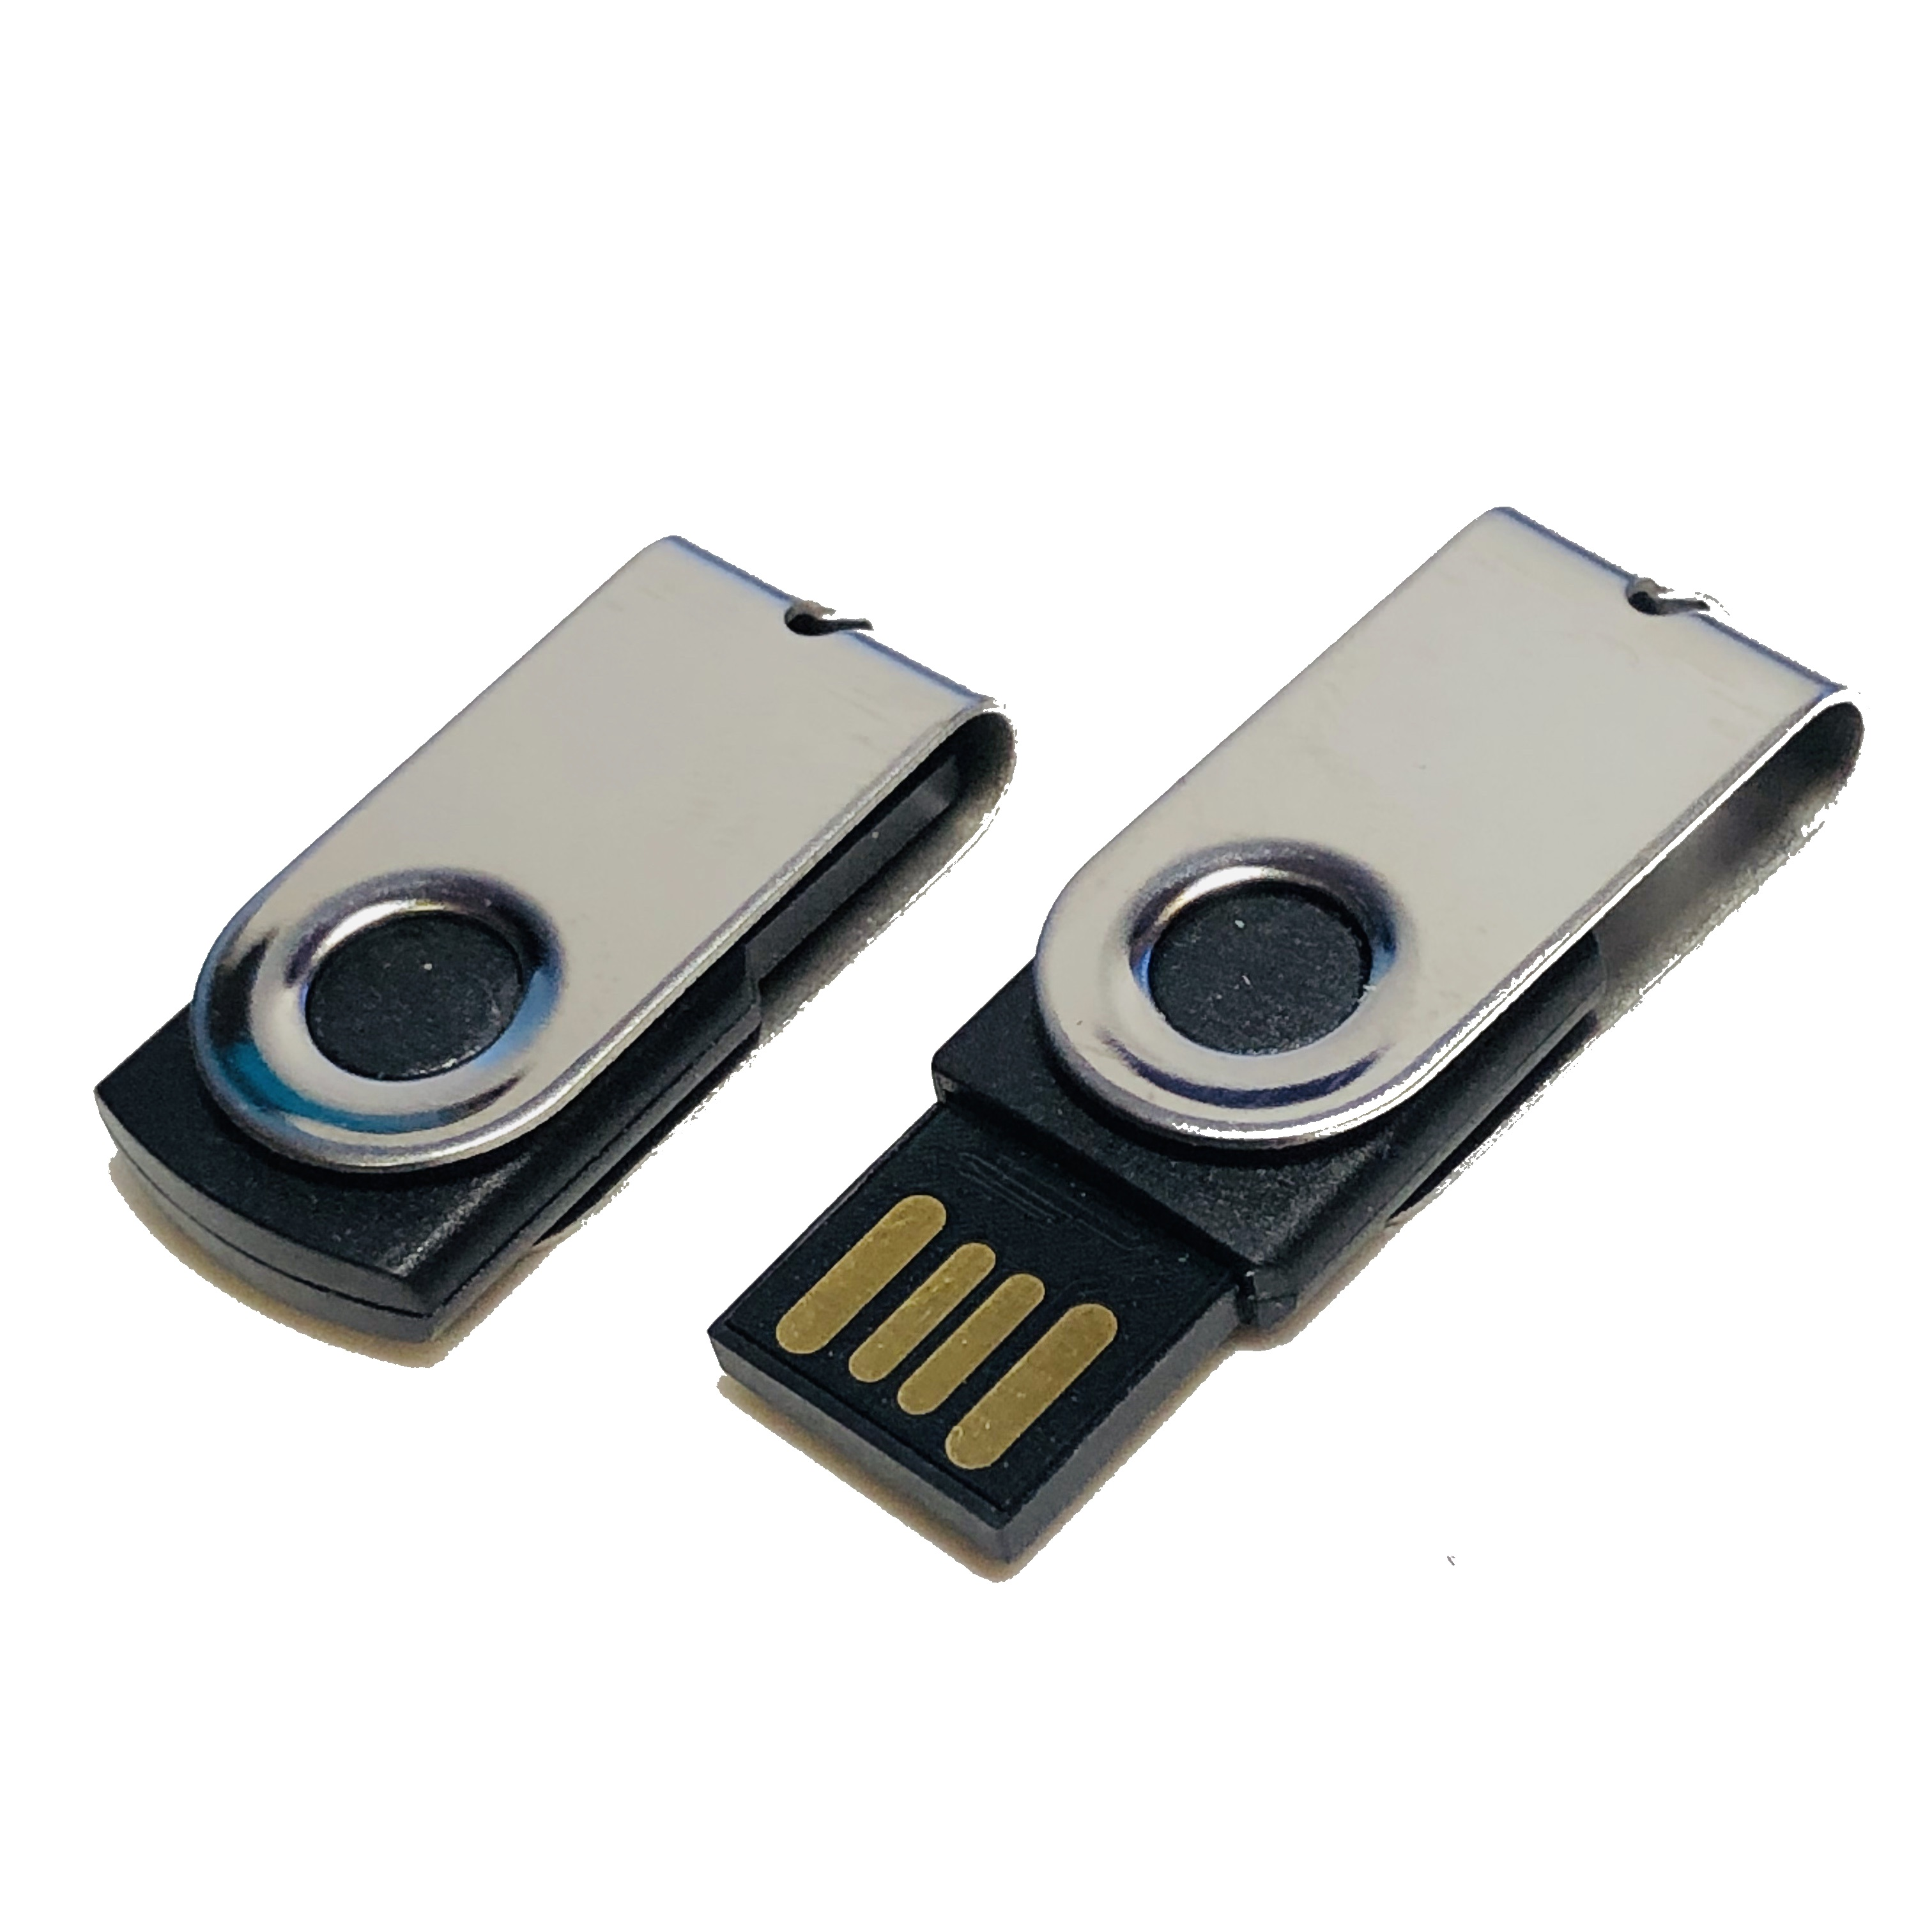 USB GERMANY ® MINI-SWIVEL 1 GB) (Schwarz-Chrome, USB-Stick